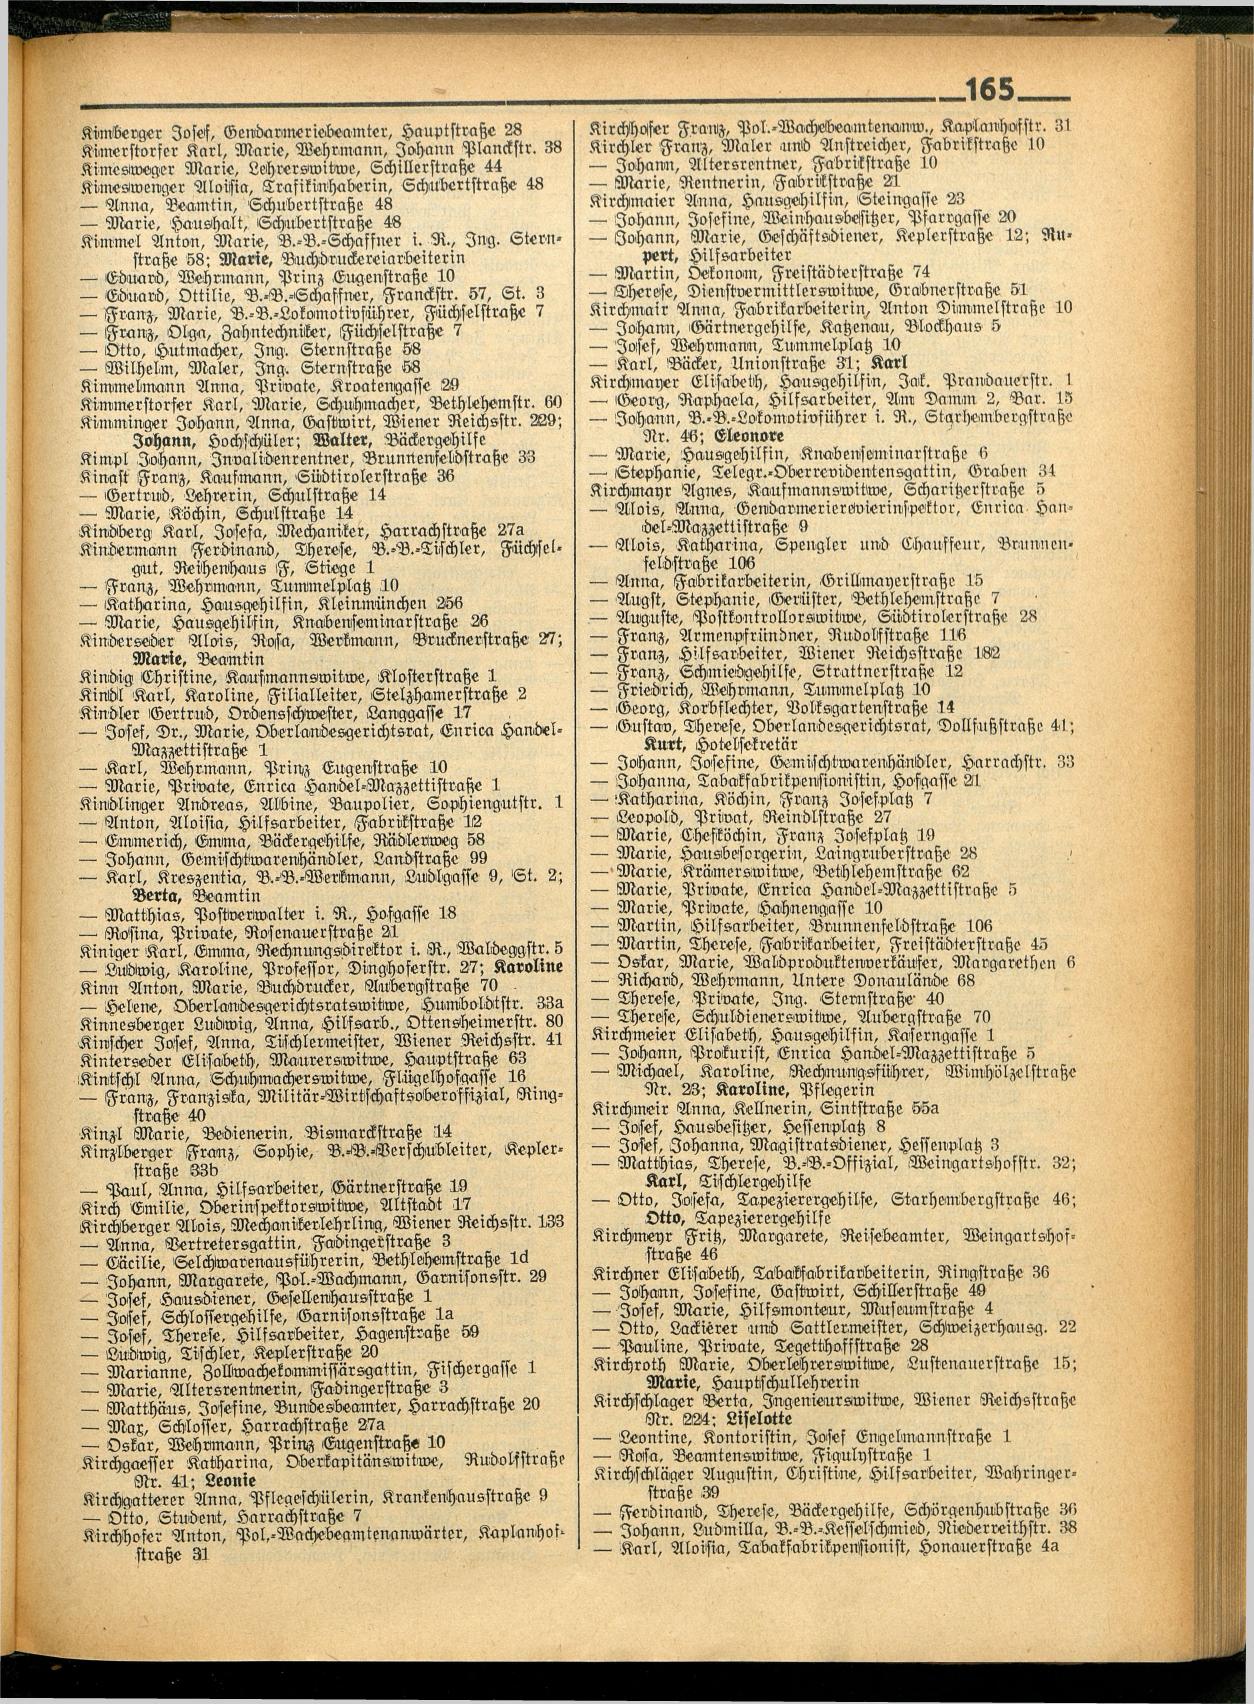 Amtliches Linzer Adreßbuch 1936 - Page 299